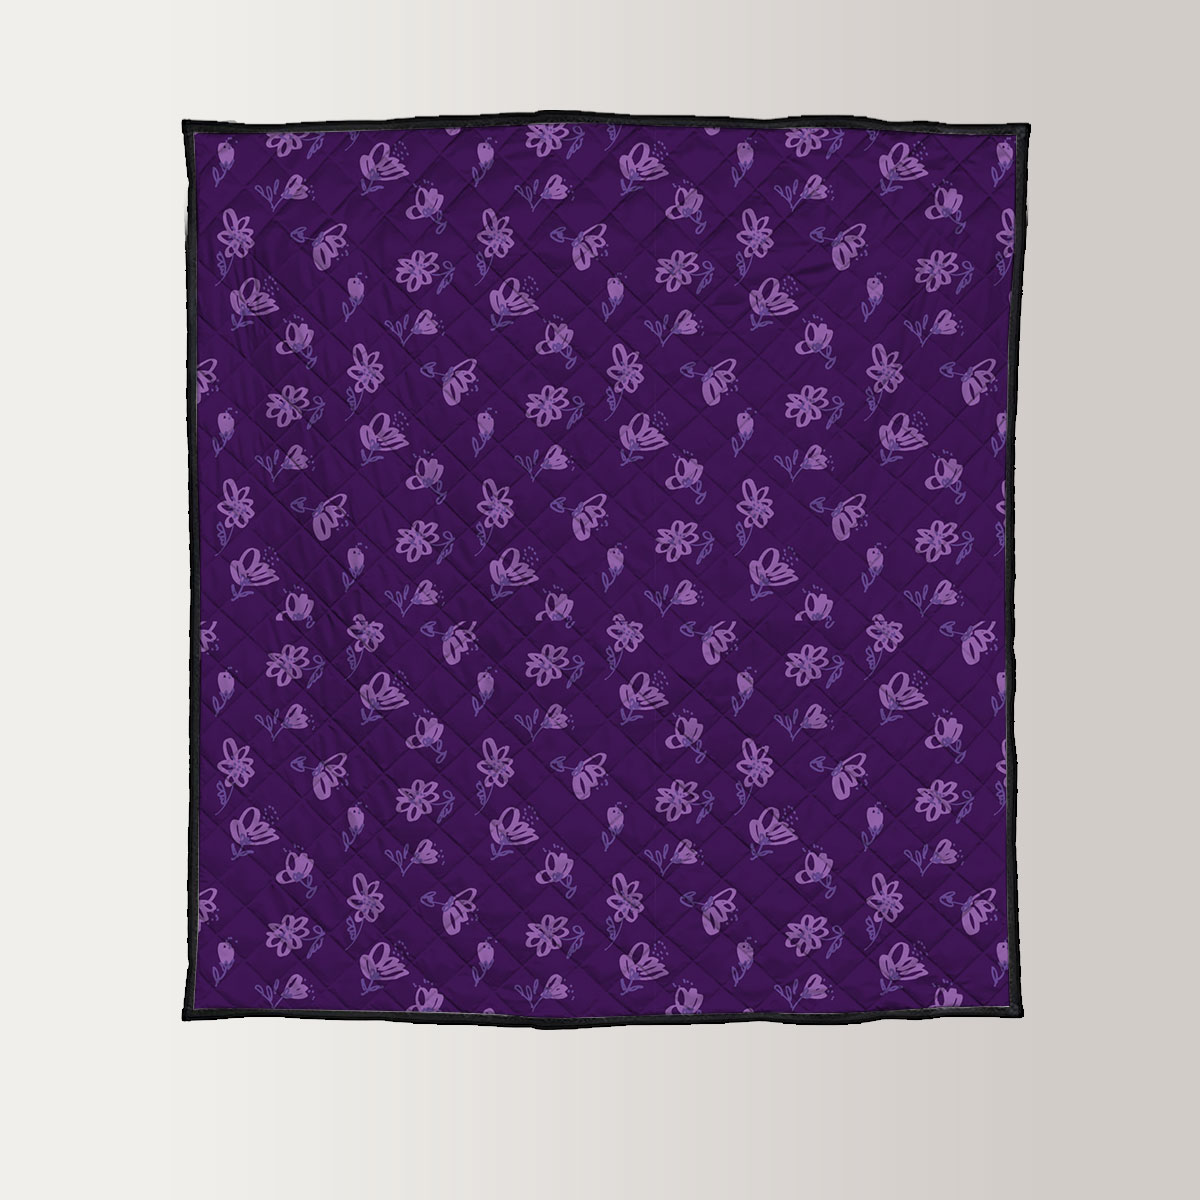 Vintage Violet Floral Seamless Pattern Quilt